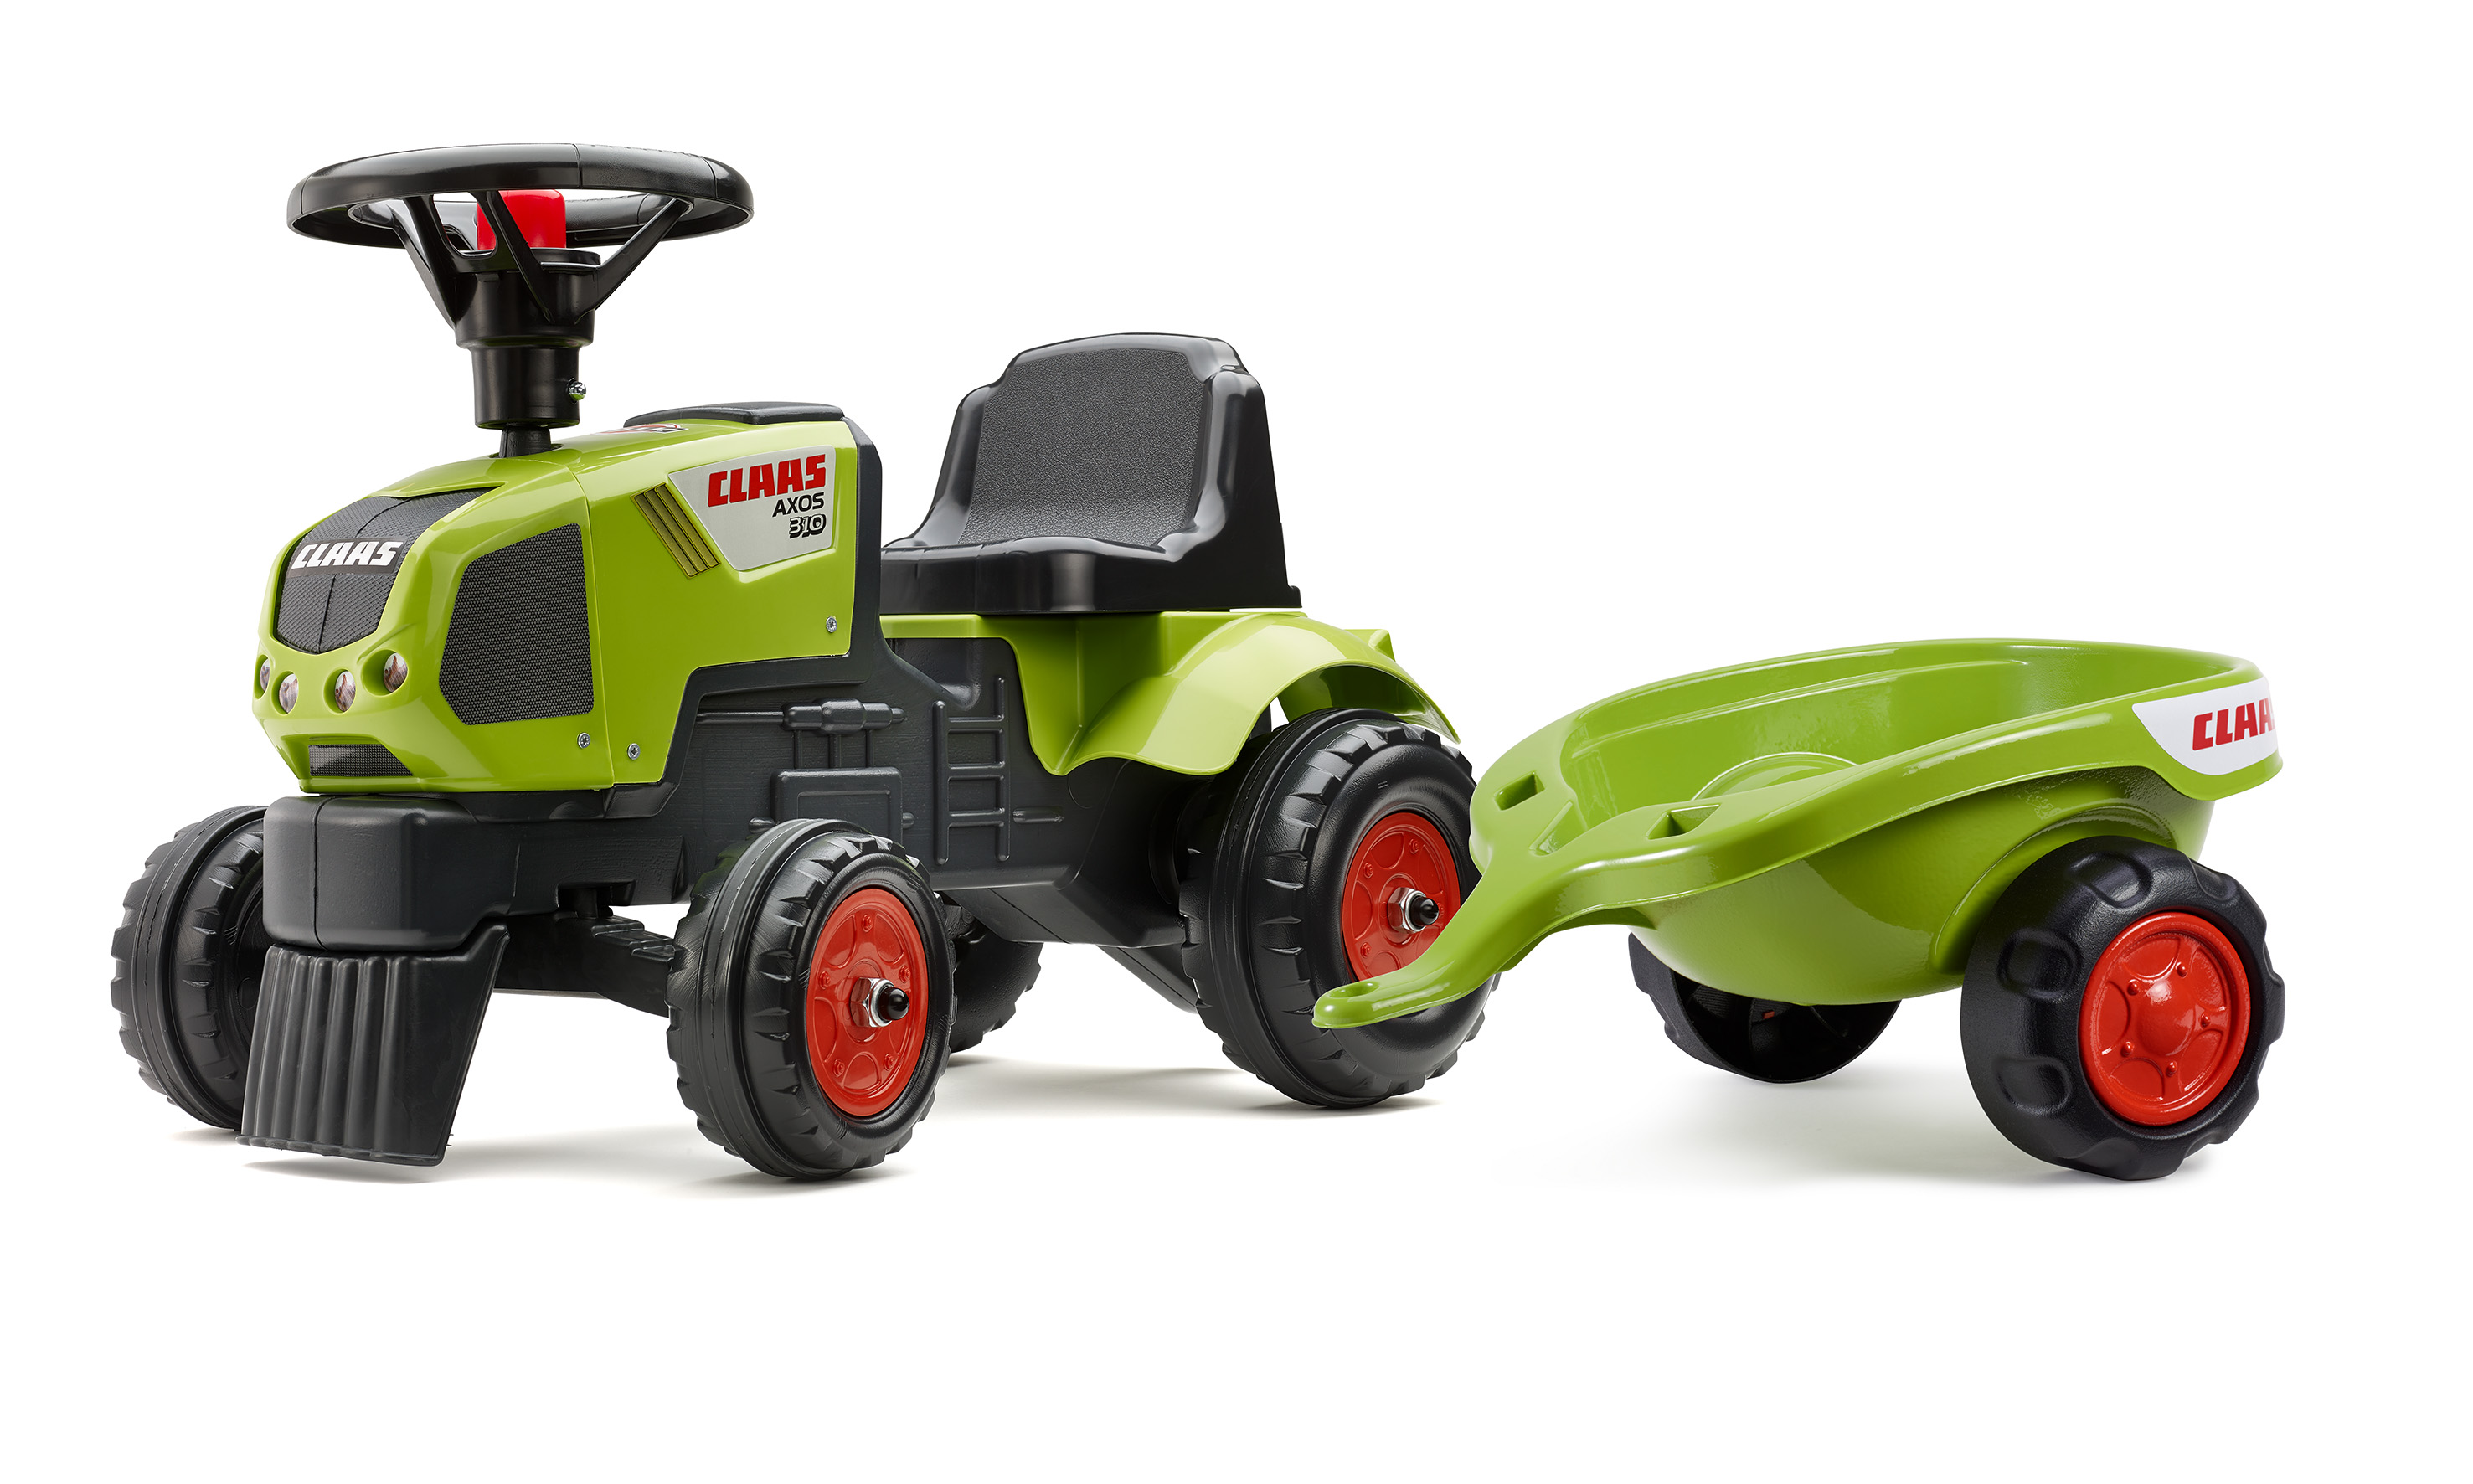 Odrážedlo traktor Baby Claas Axos 310 s 2 kolovým valníkem